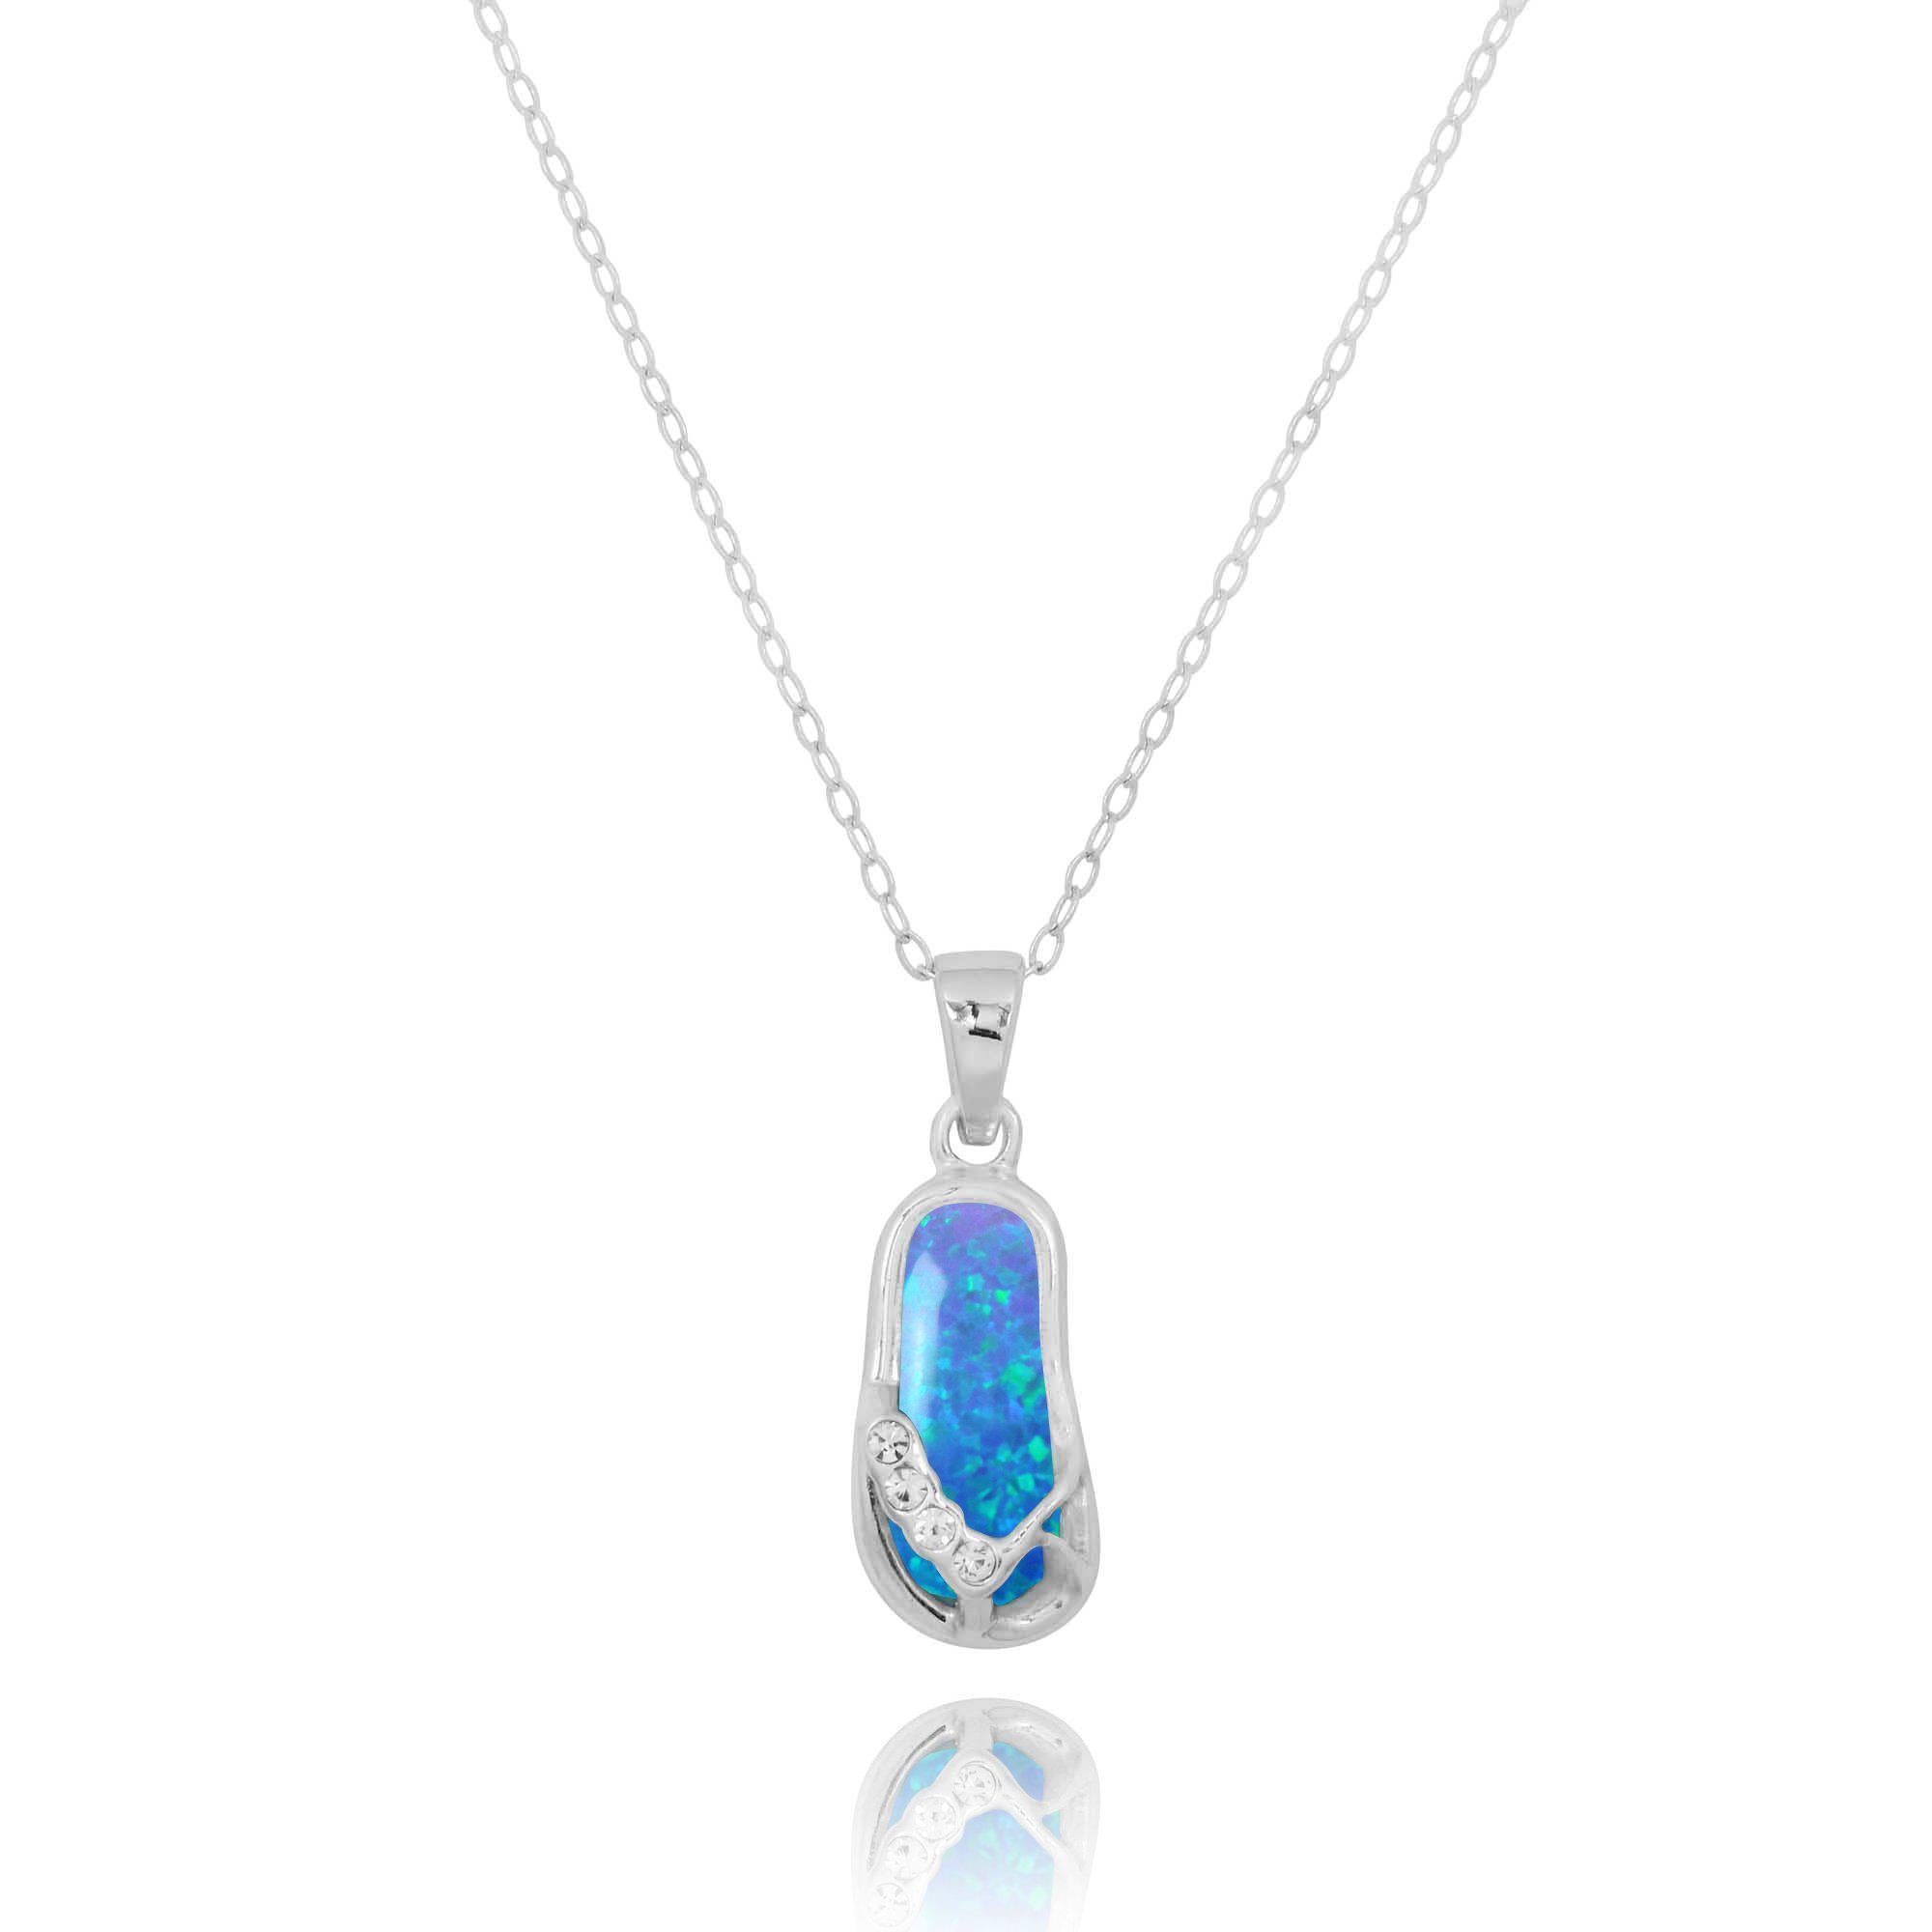 Flip Flop Pendant Necklace with Blue Opal